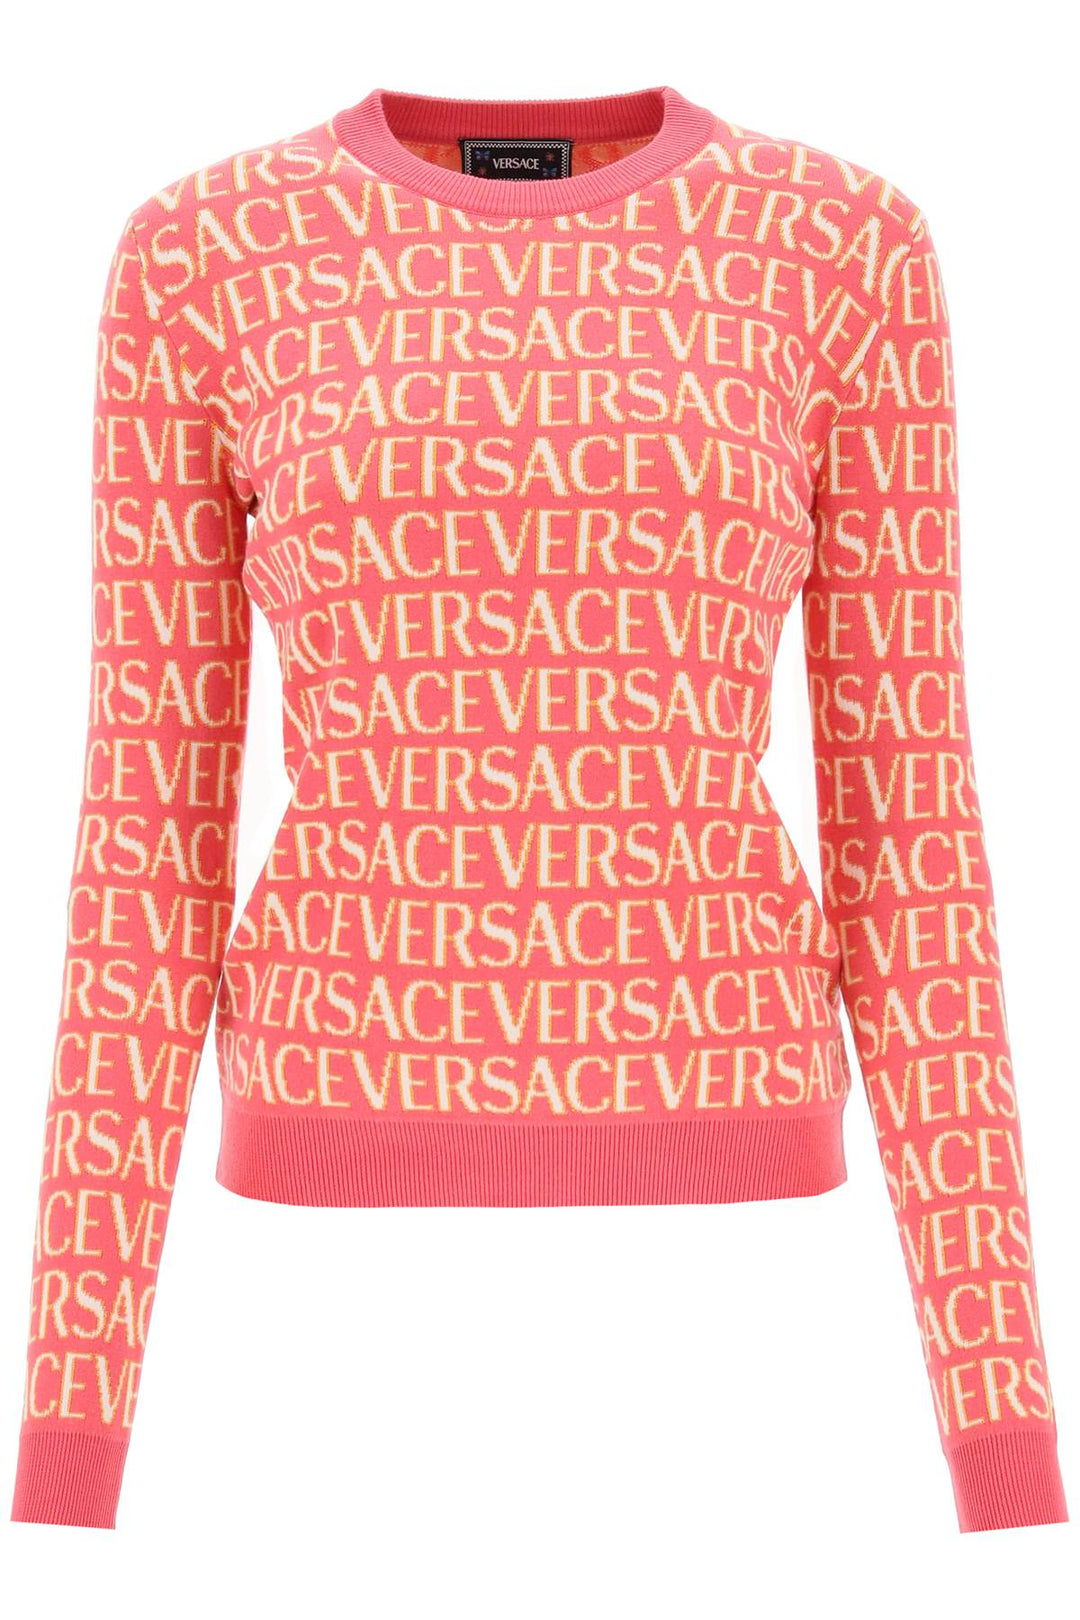 Versace 'Allover' Crew Neck Sweater   Fuxia